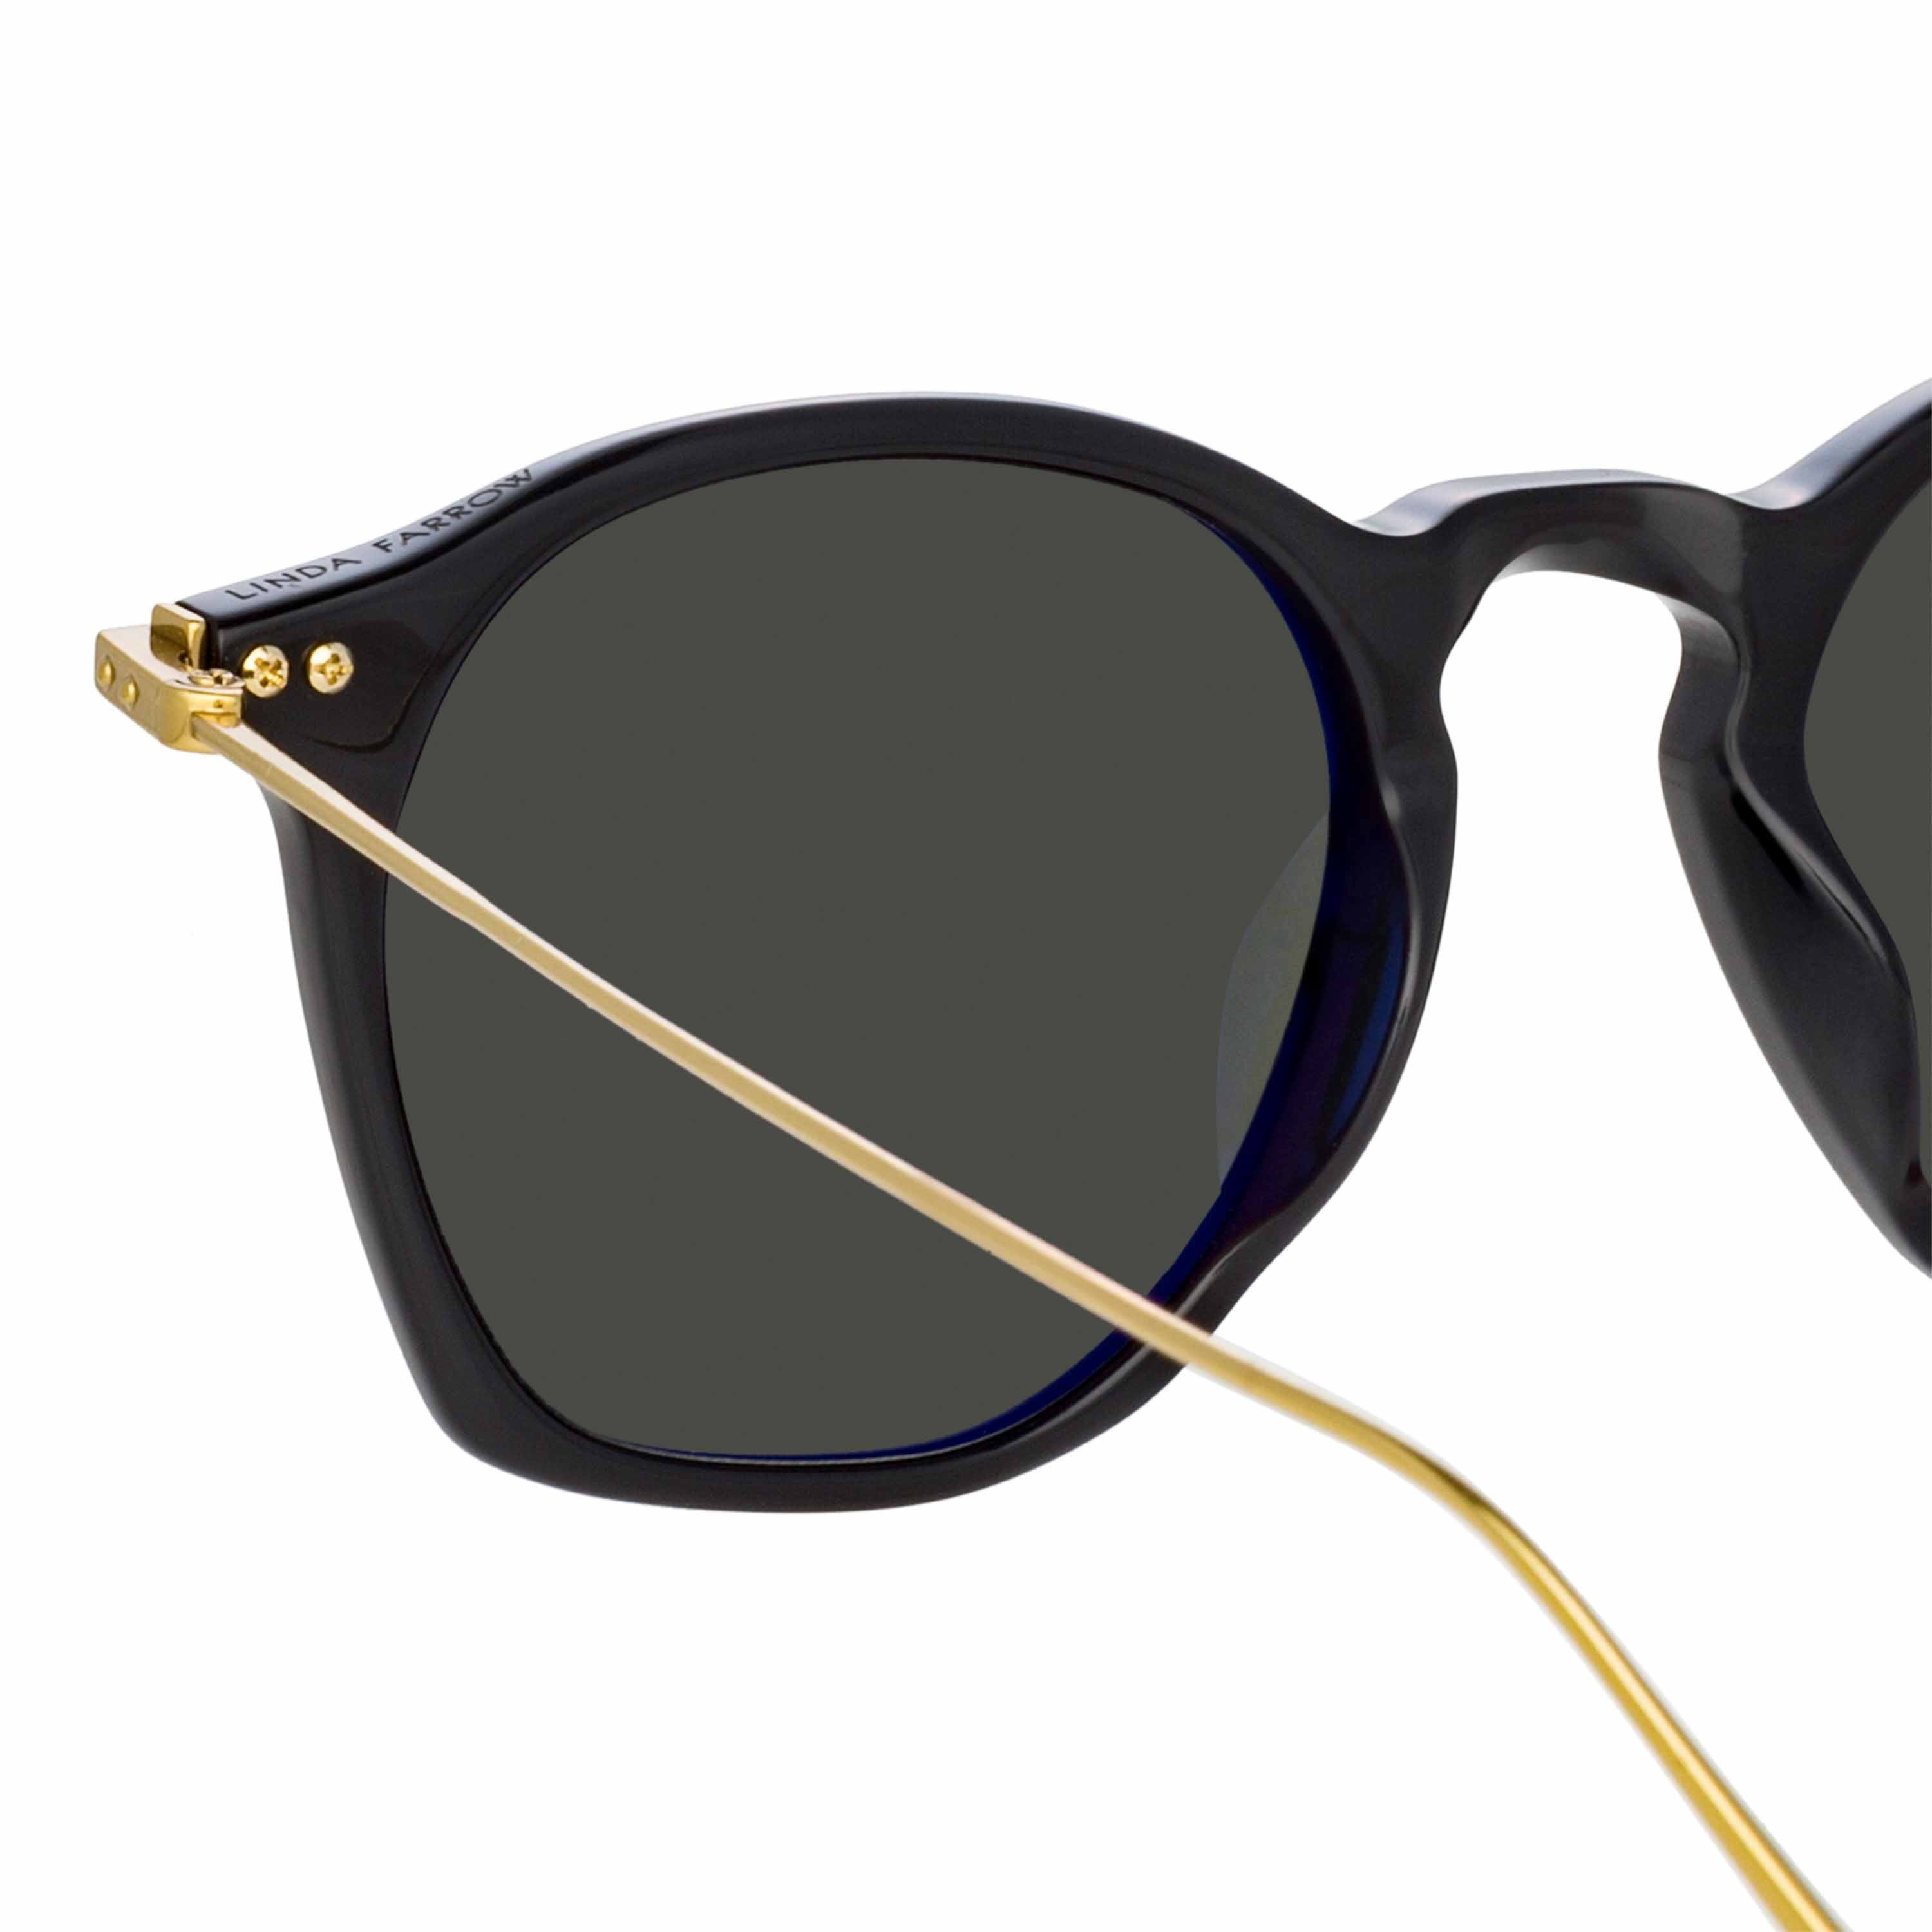 Color_LF52C6SUN - Mila Square Sunglasses in Black